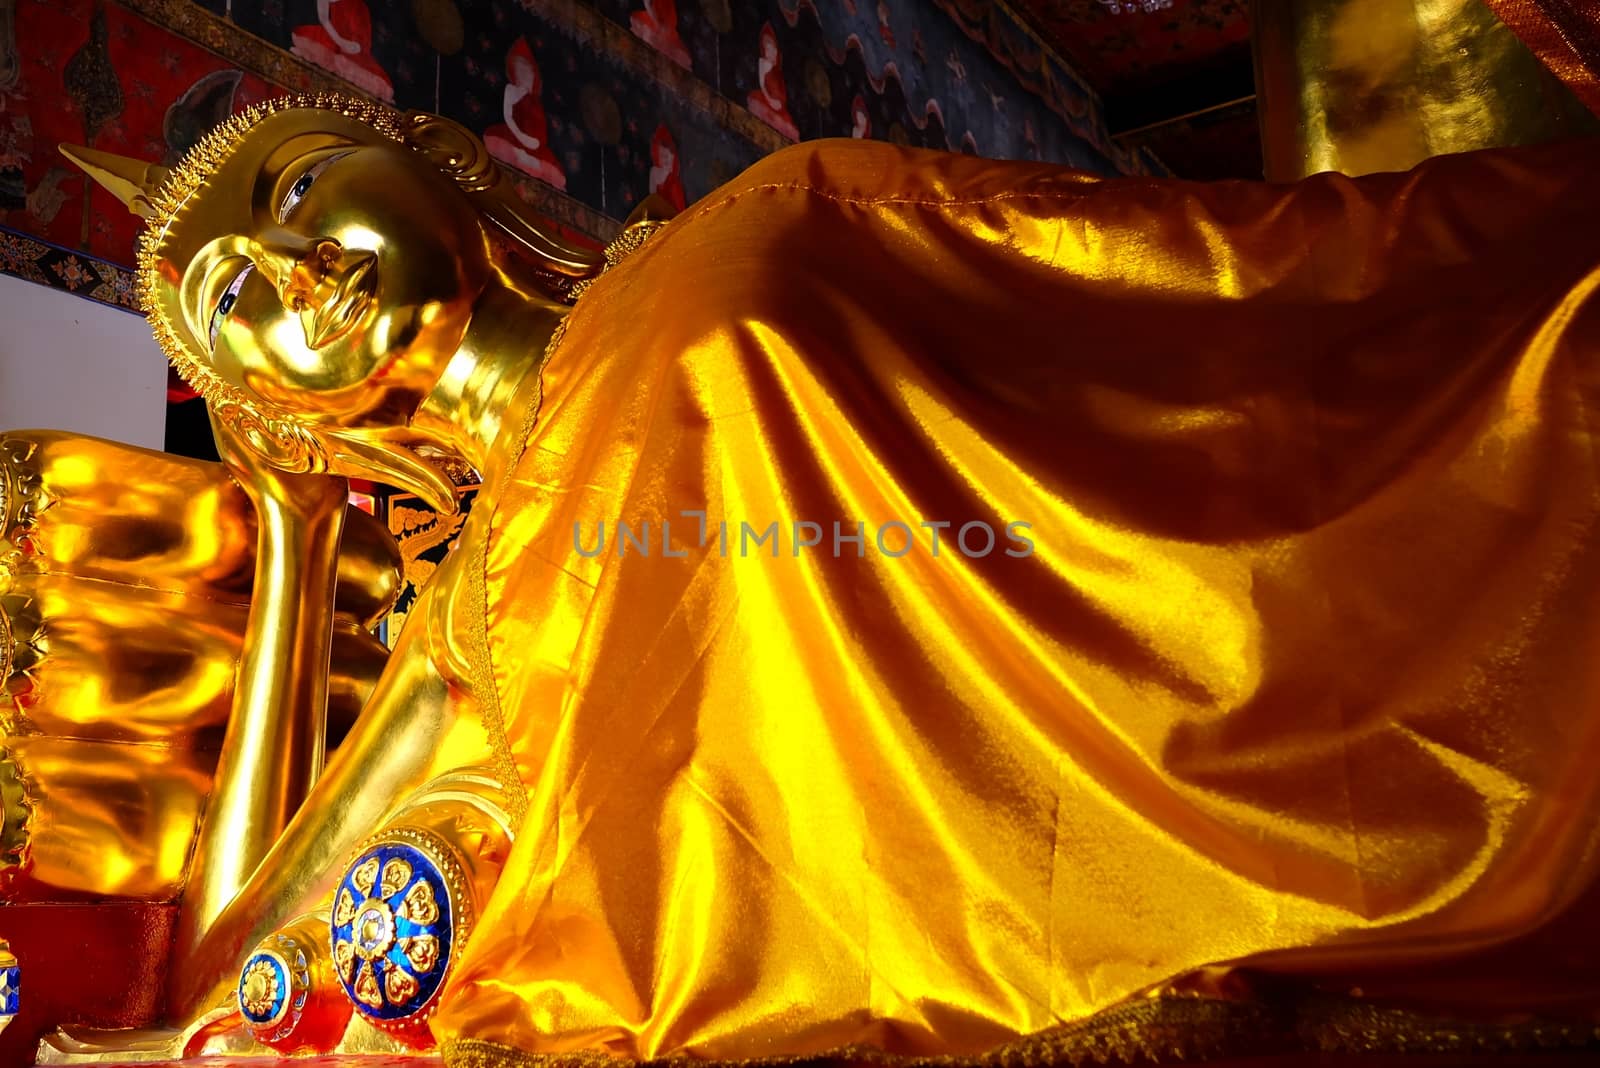 Ancient Golden Reclining Buddha at Wat Nang-Chee Choti Karam Temple, Bangkok Thailand. by mesamong